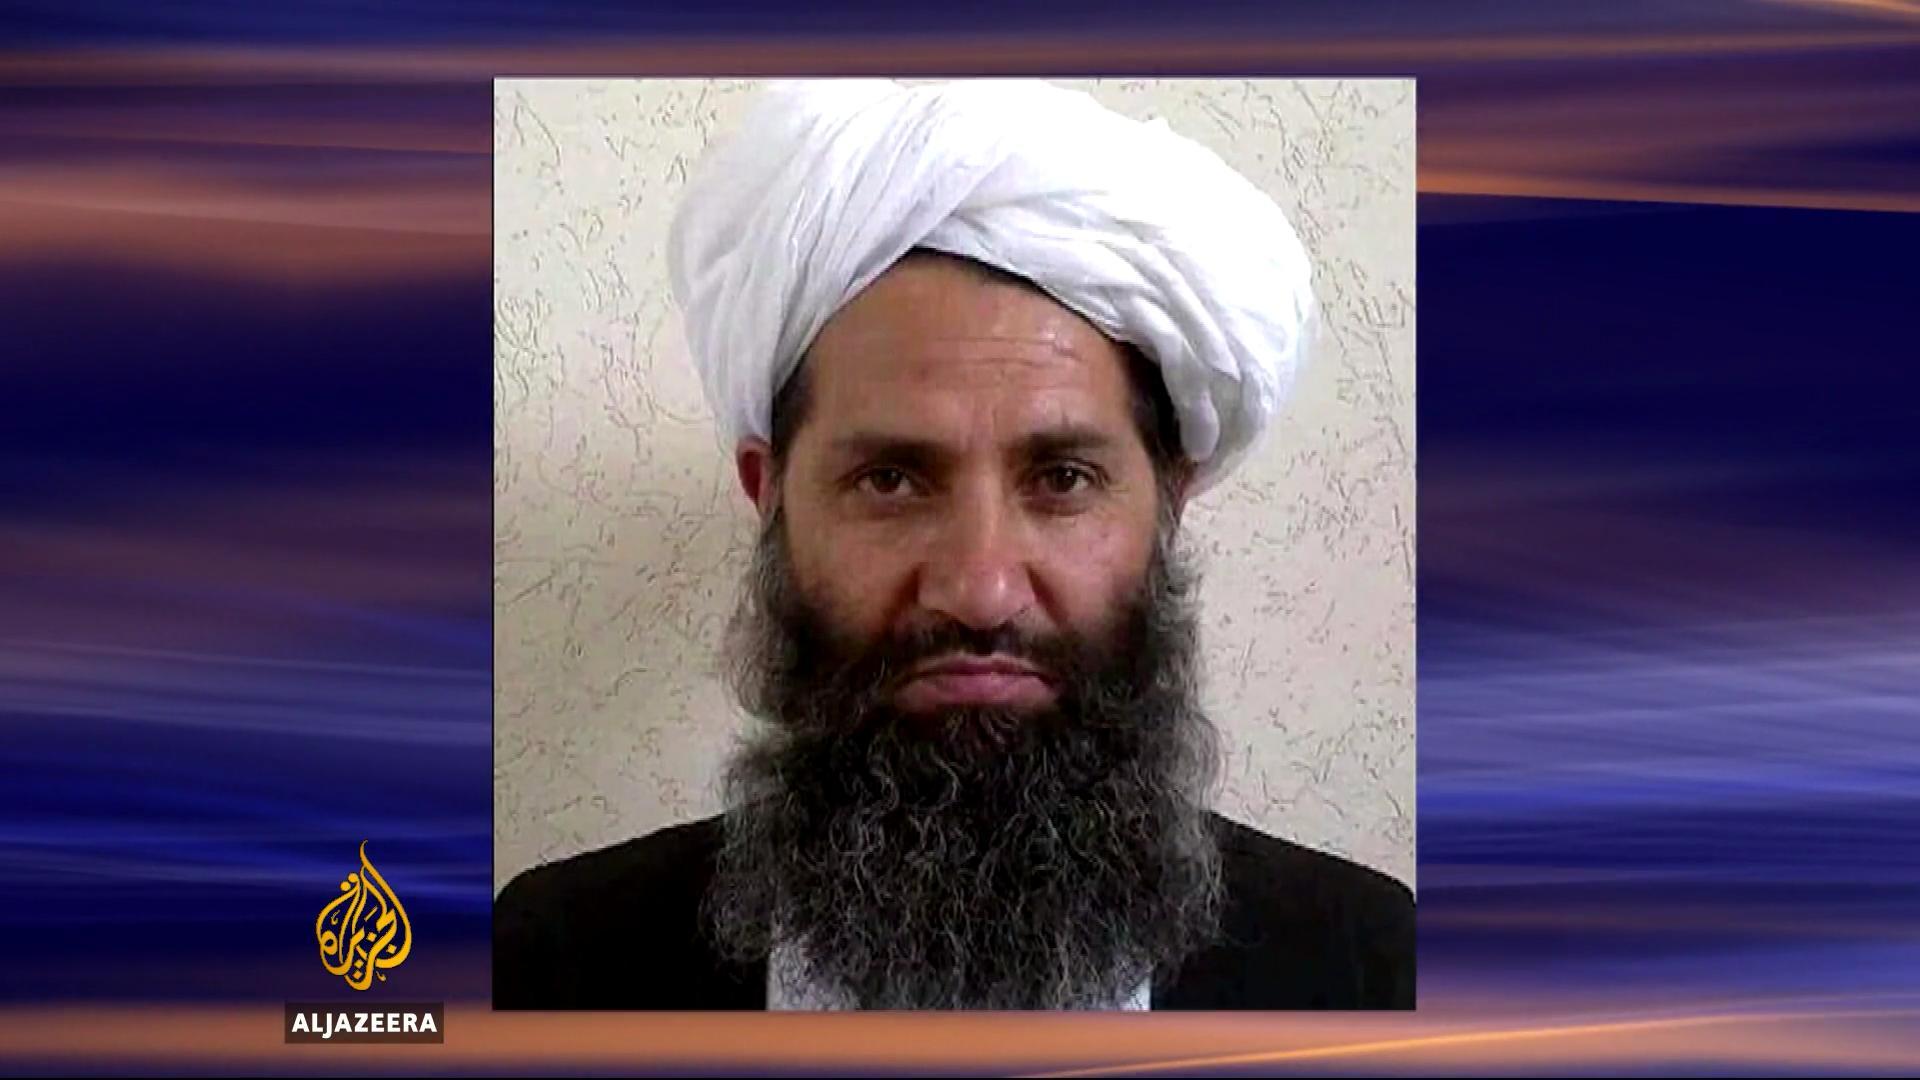 सरकारको घोषणा गर्दै तालिबान : अखुनजादाको मातहतमा राष्ट्रपति र प्रधानमन्त्री रहने